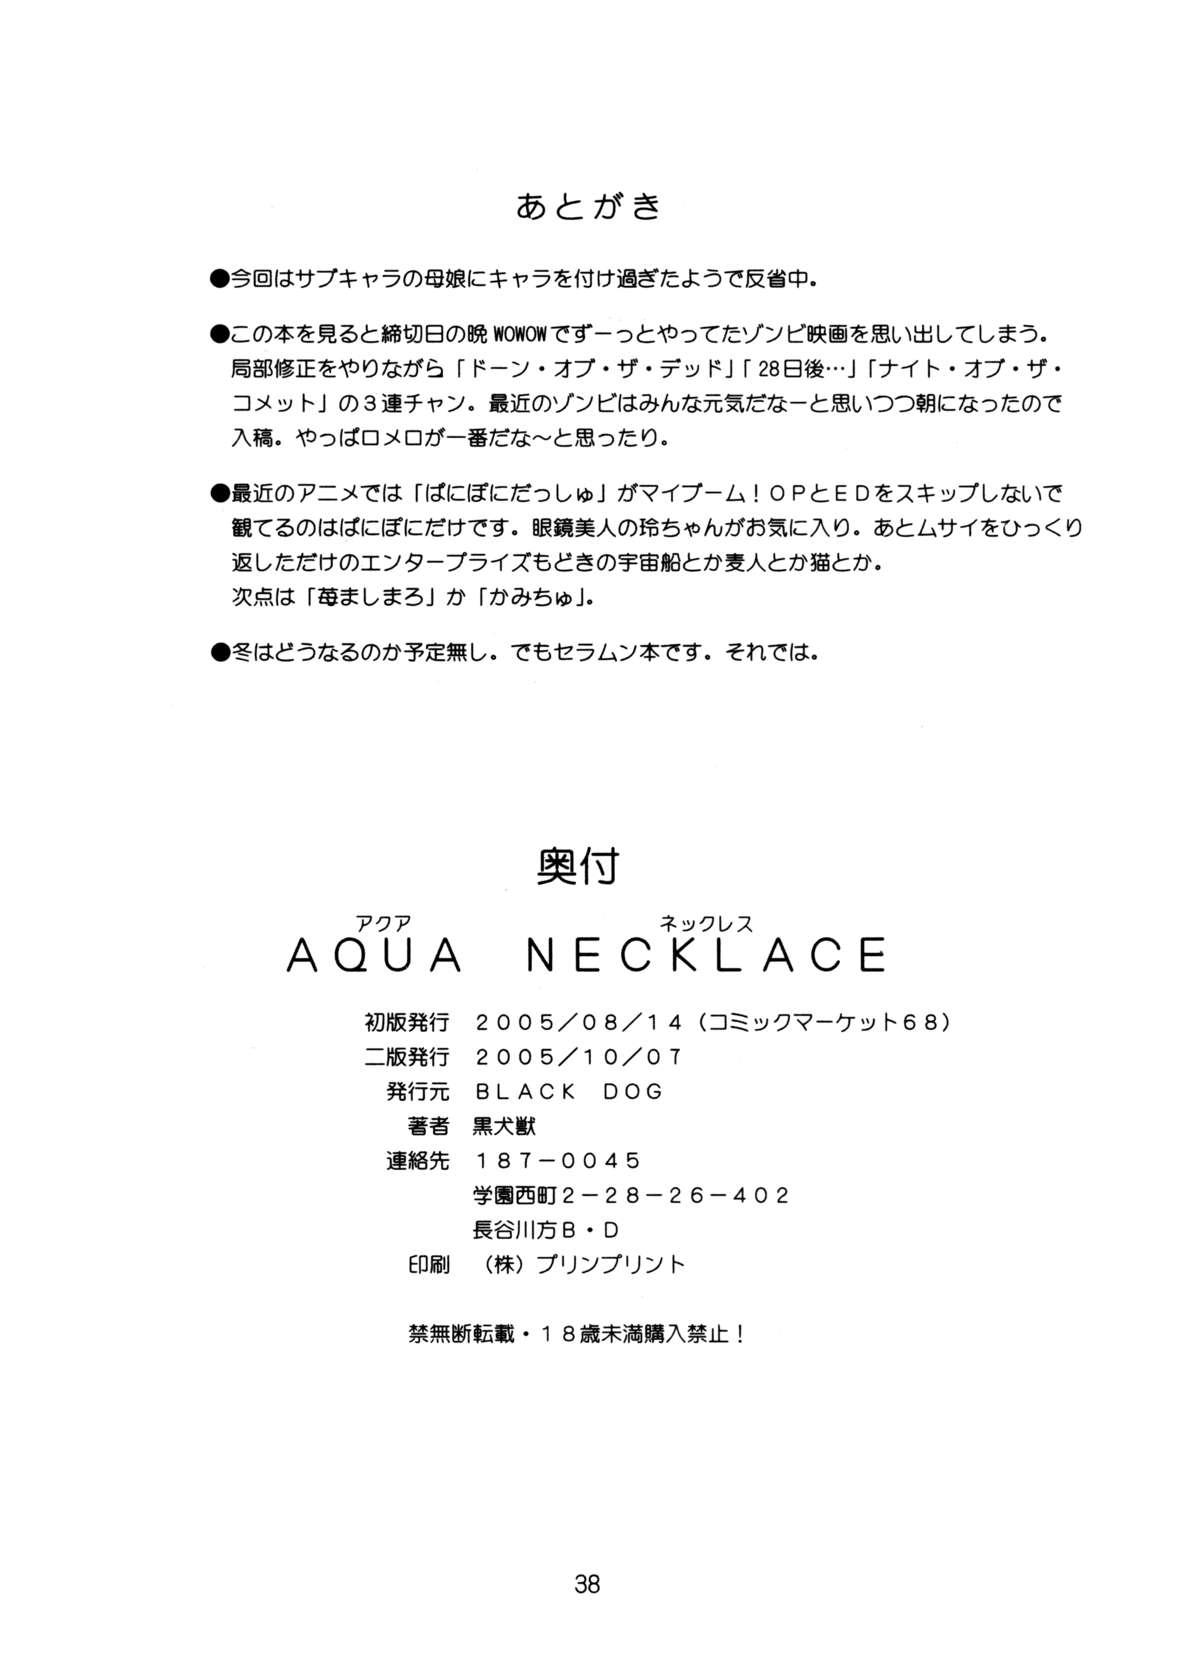 Aqua Necklace 36